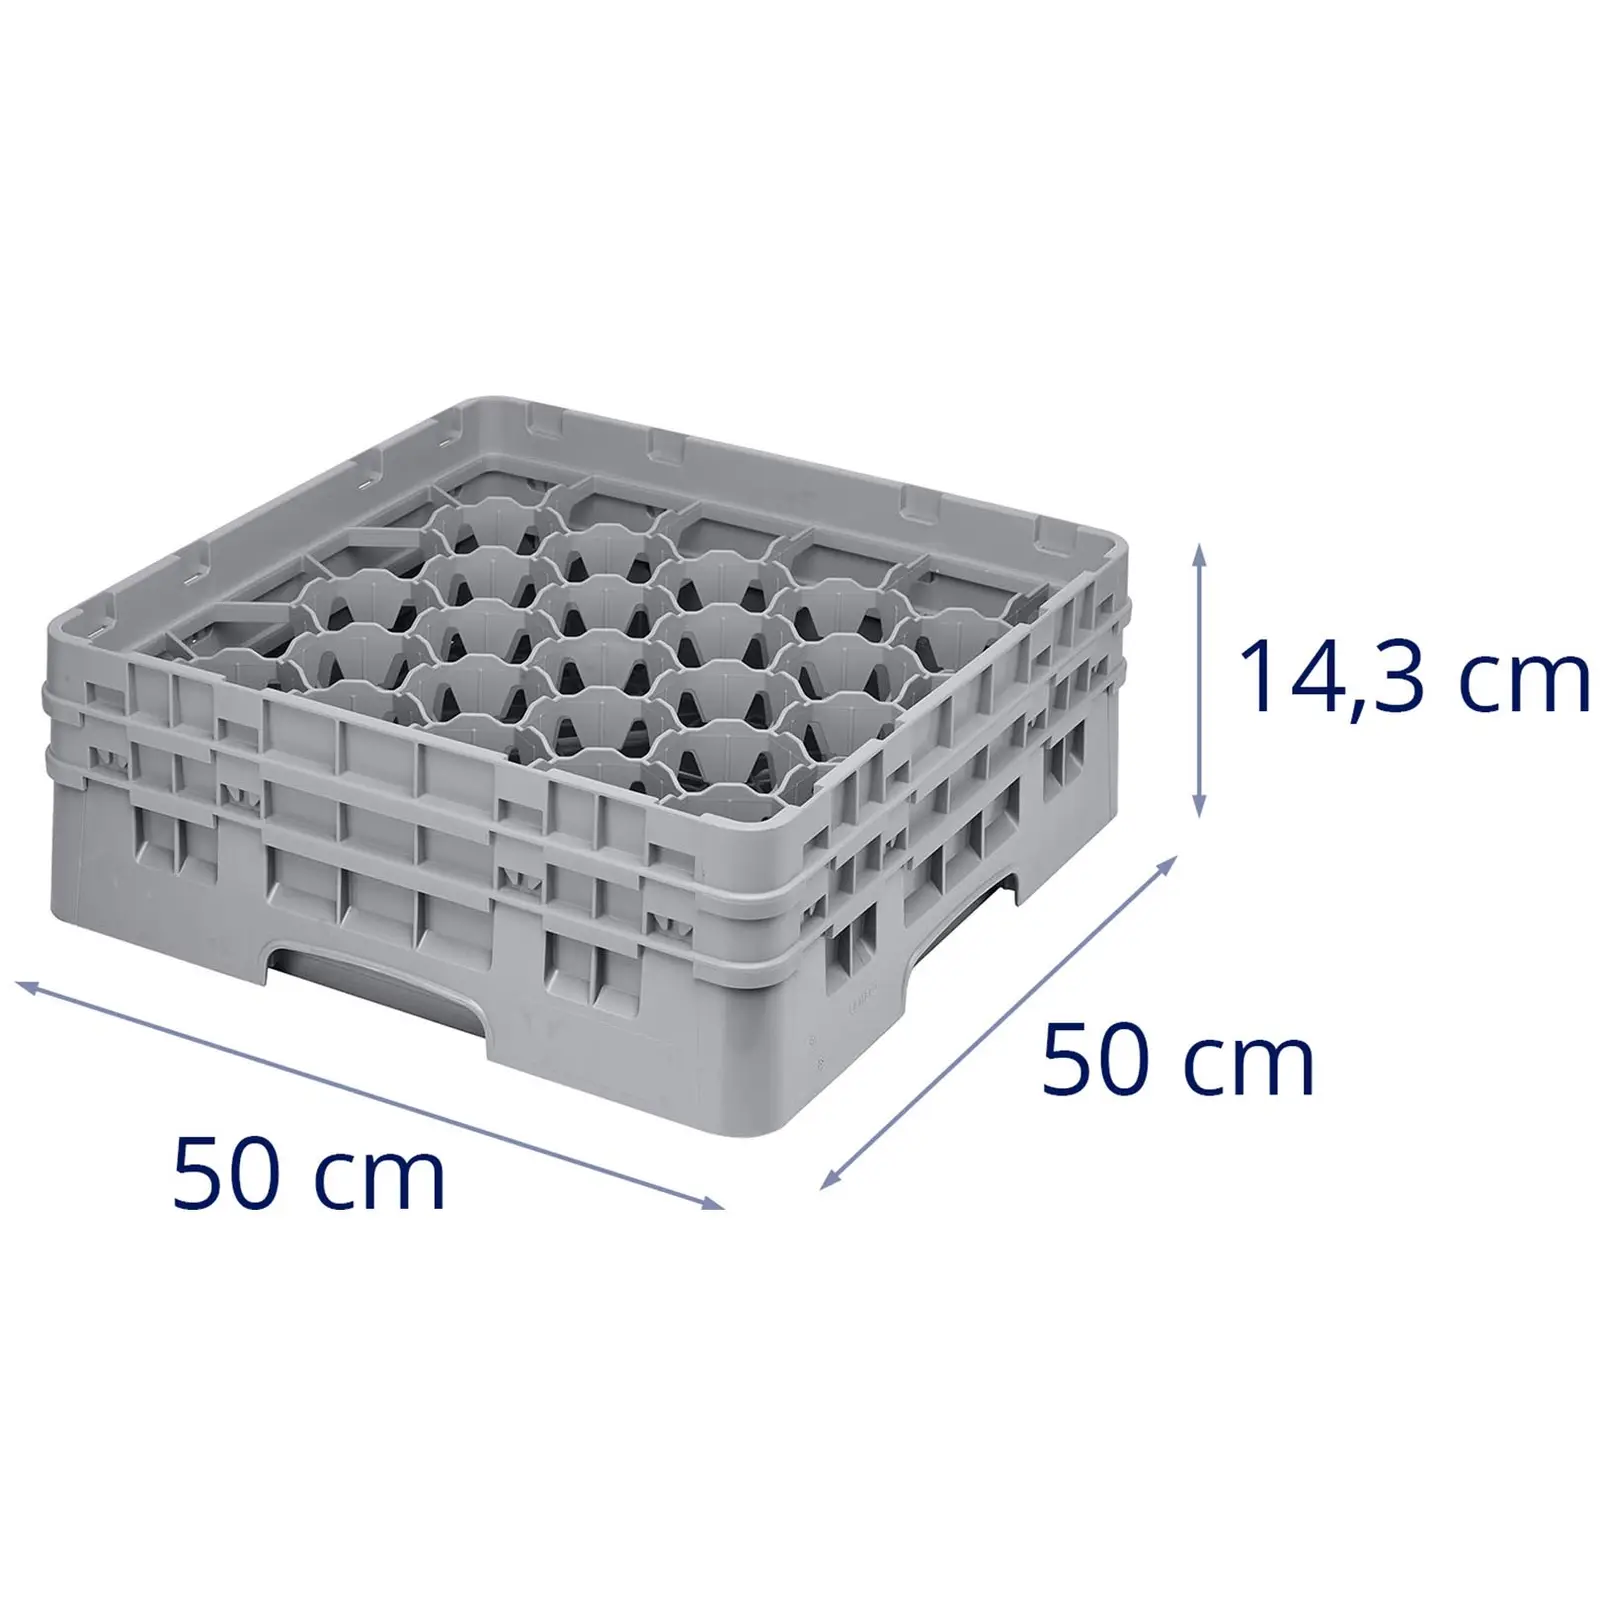 Opvaskekurv til glas til industriopvaskemaskine - 30 rum - 50 x 50 x 14,3 cm - glashøjde: 9,2 cm